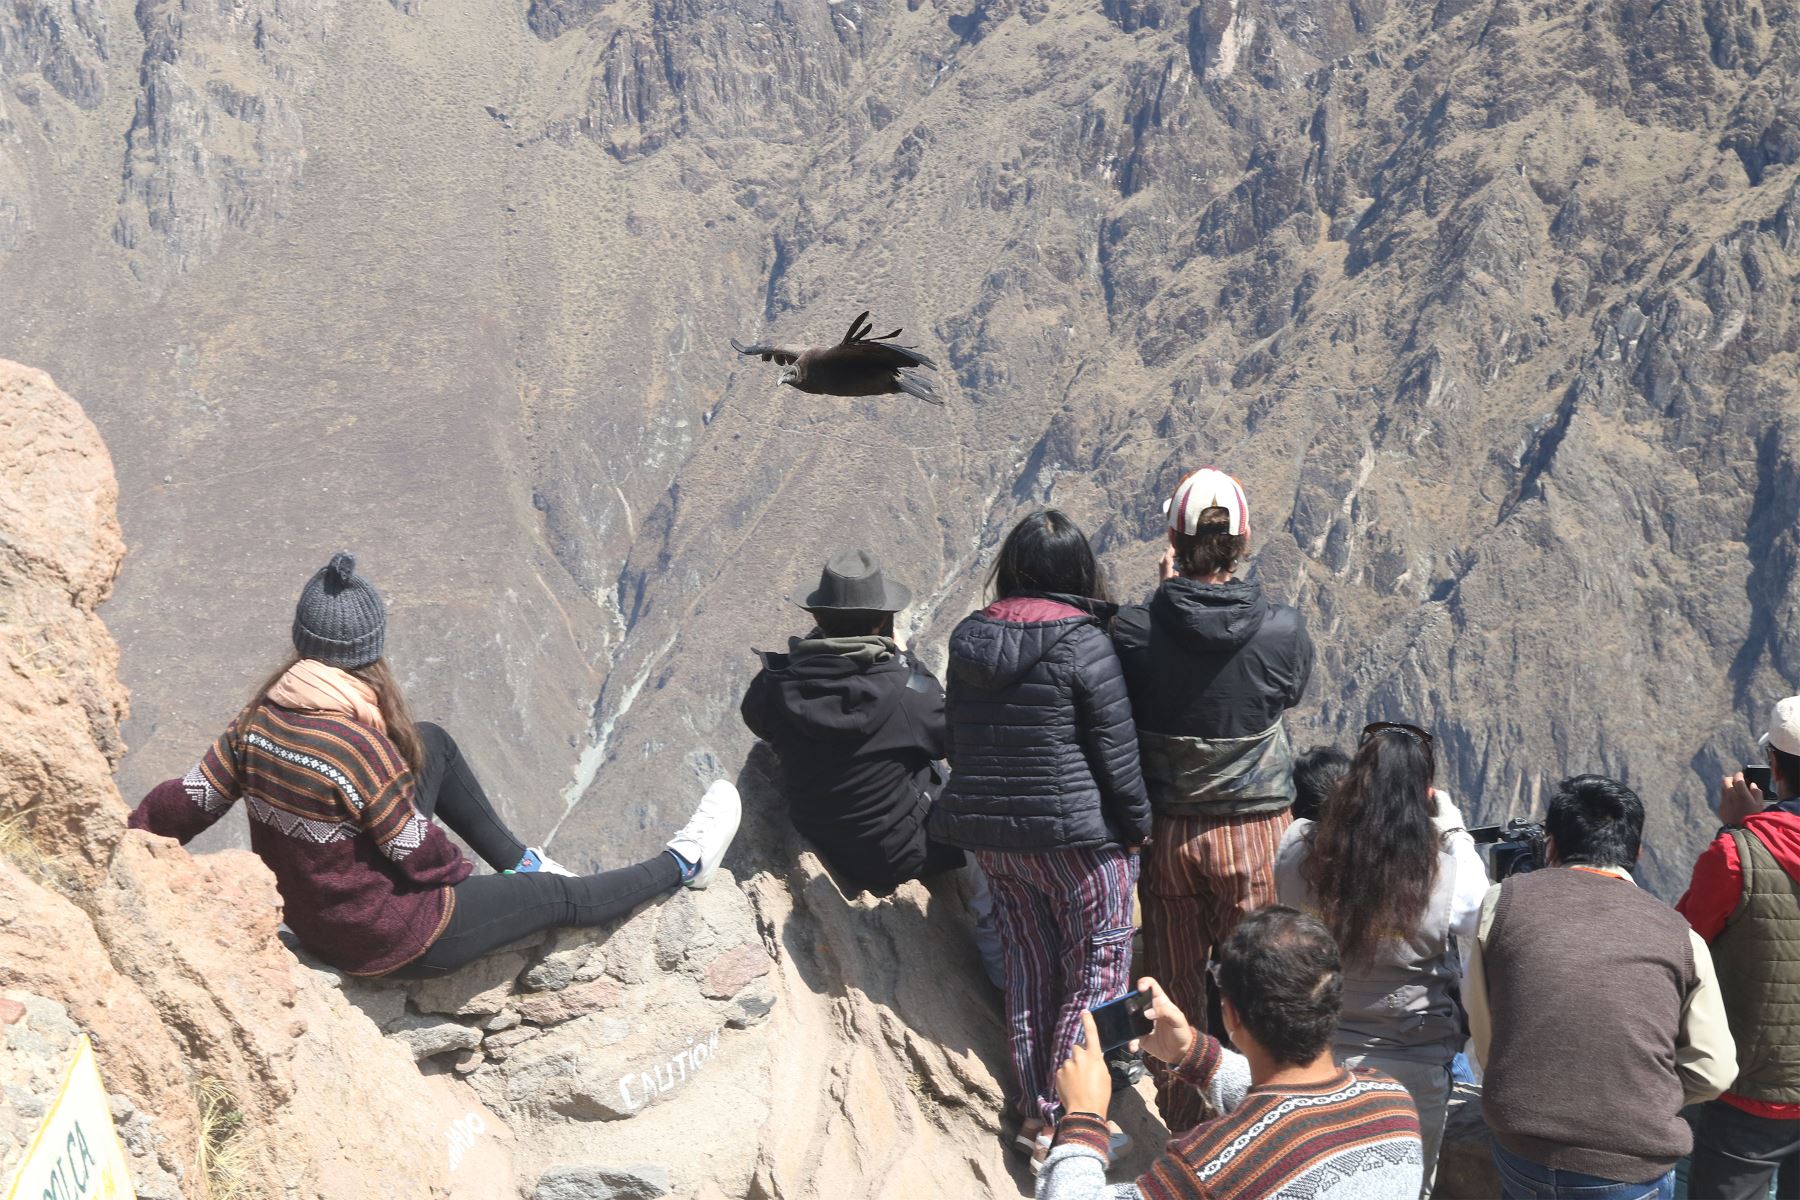 Visita al Valle del Colca en Arequipa. Traslado y visita al Mirador de la Cruz de Cóndor.
Foto: ANDINA/Eddy Ramos